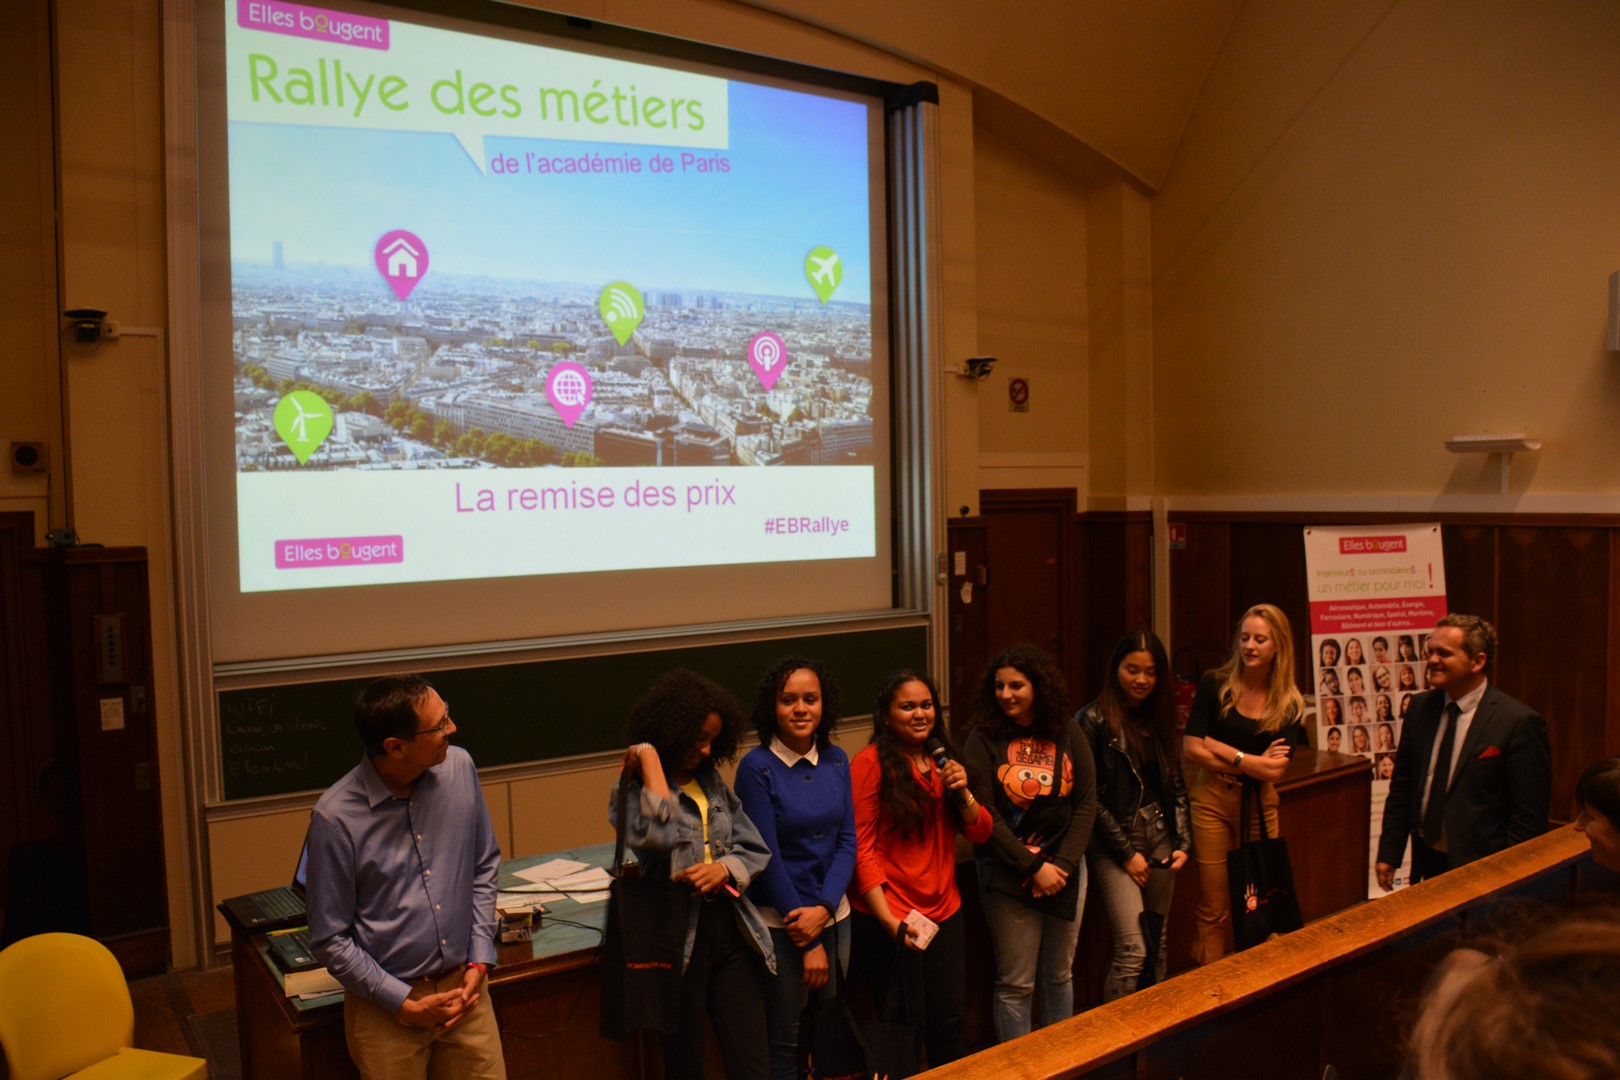 Rallye des métiers 2018 de l'Académie de Paris : Témoignage d'une lycéenne Elles Bougent